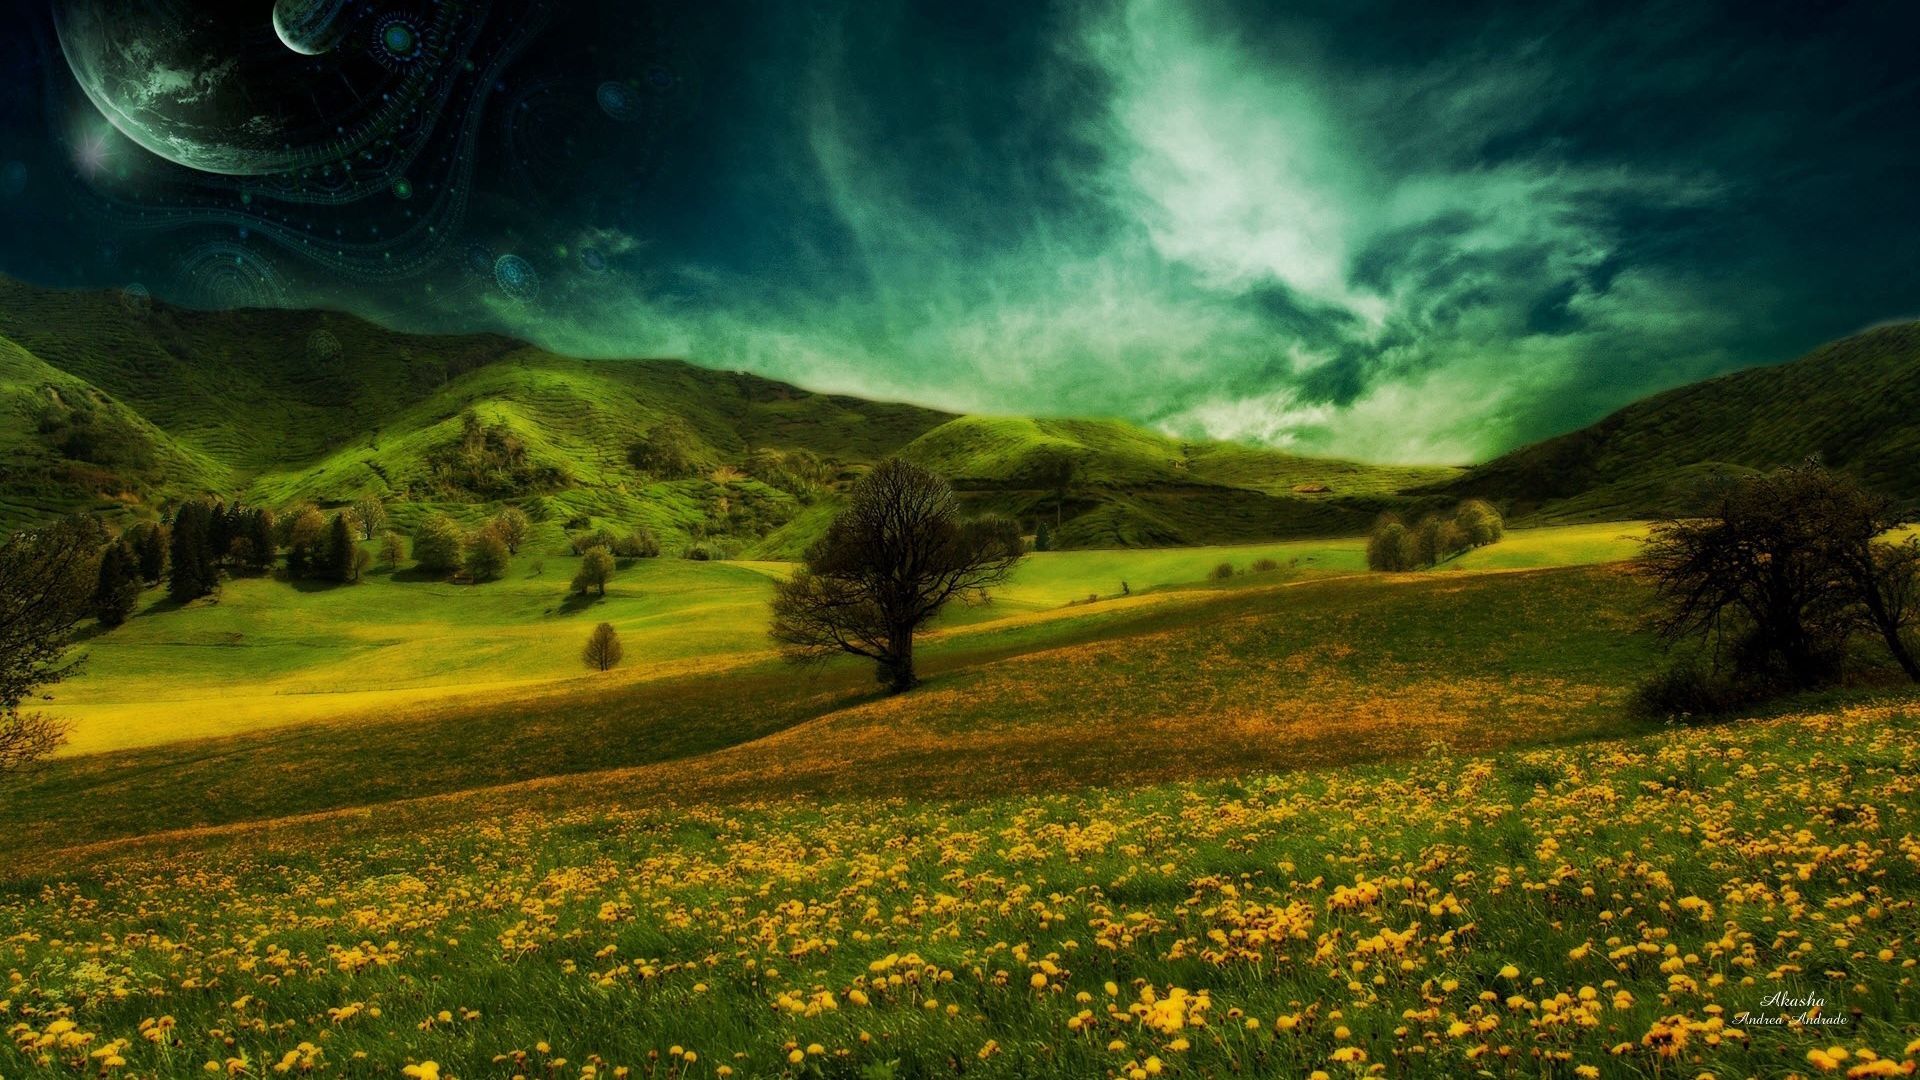 Download wallpaper 1920x1080 meadow, nature, summer, grass, sky